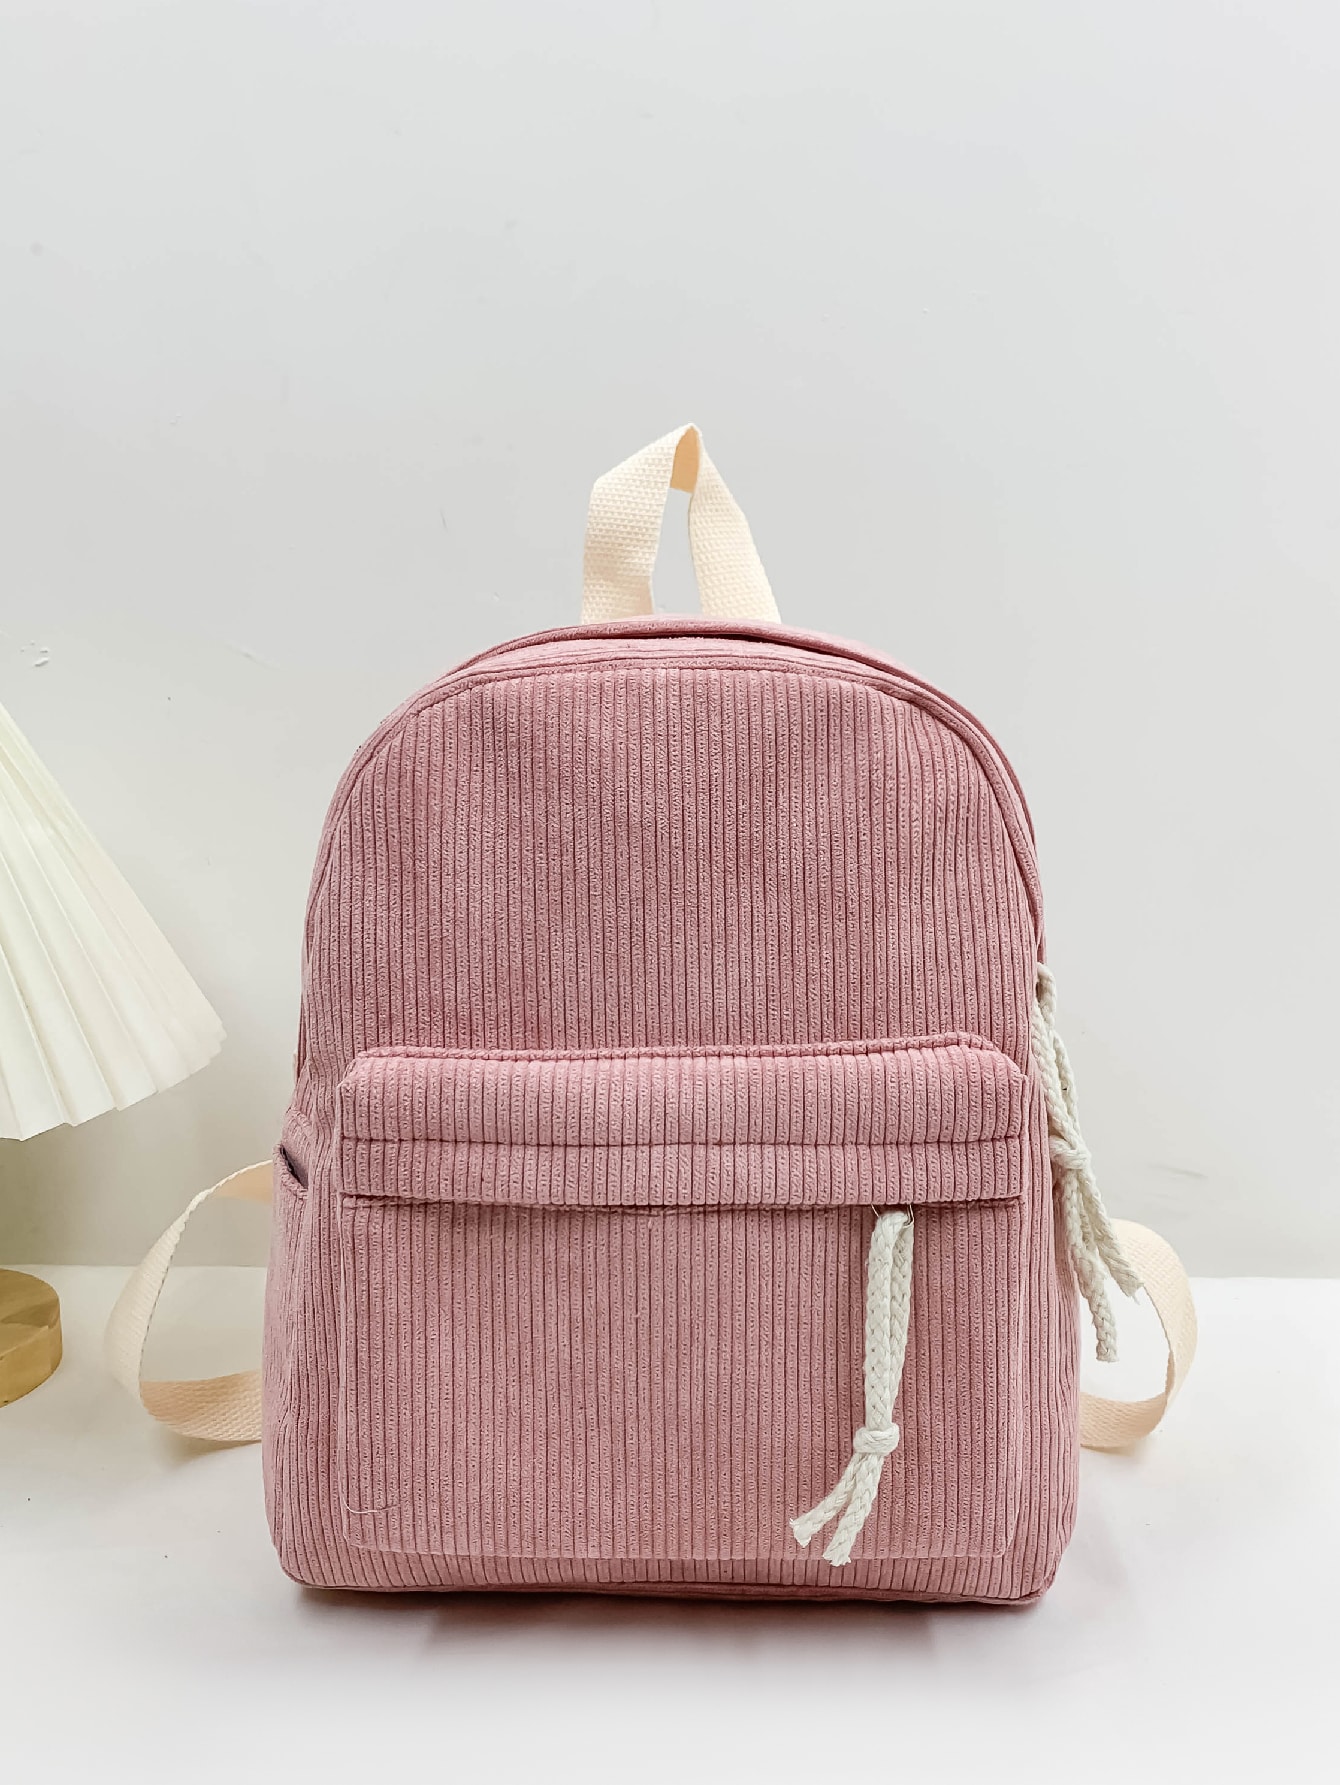 Классический рюкзак с графическим рисунком вельвета, розовый